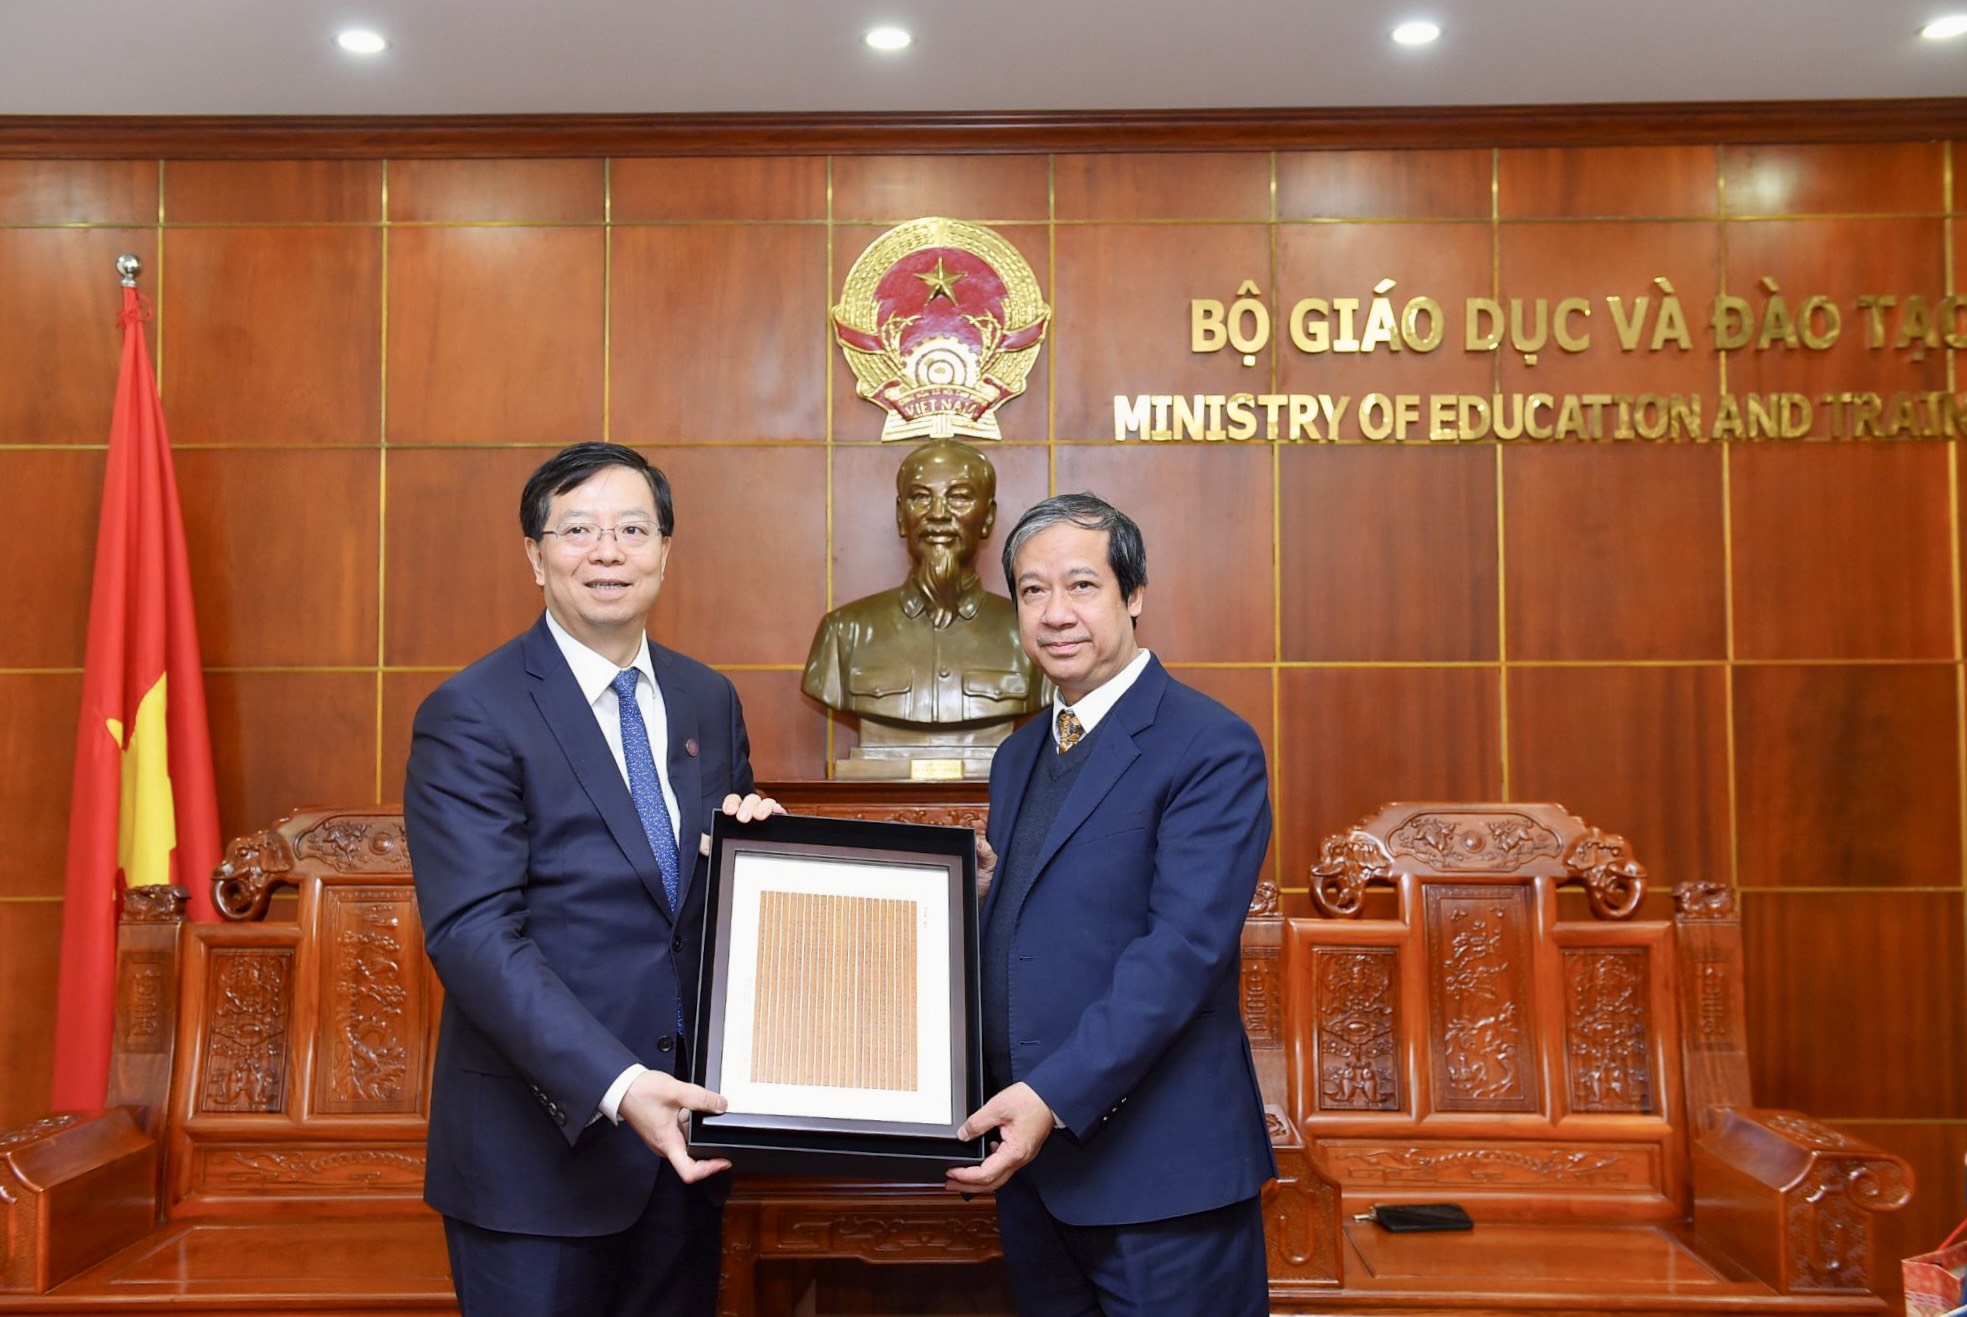 Bộ trưởng Nguyễn Kim Sơn và Chủ tịch Hội đồng ĐH Thanh Hoa Khưu Dũng tặng quà lưu niệm nhân dịp gặp mặt.